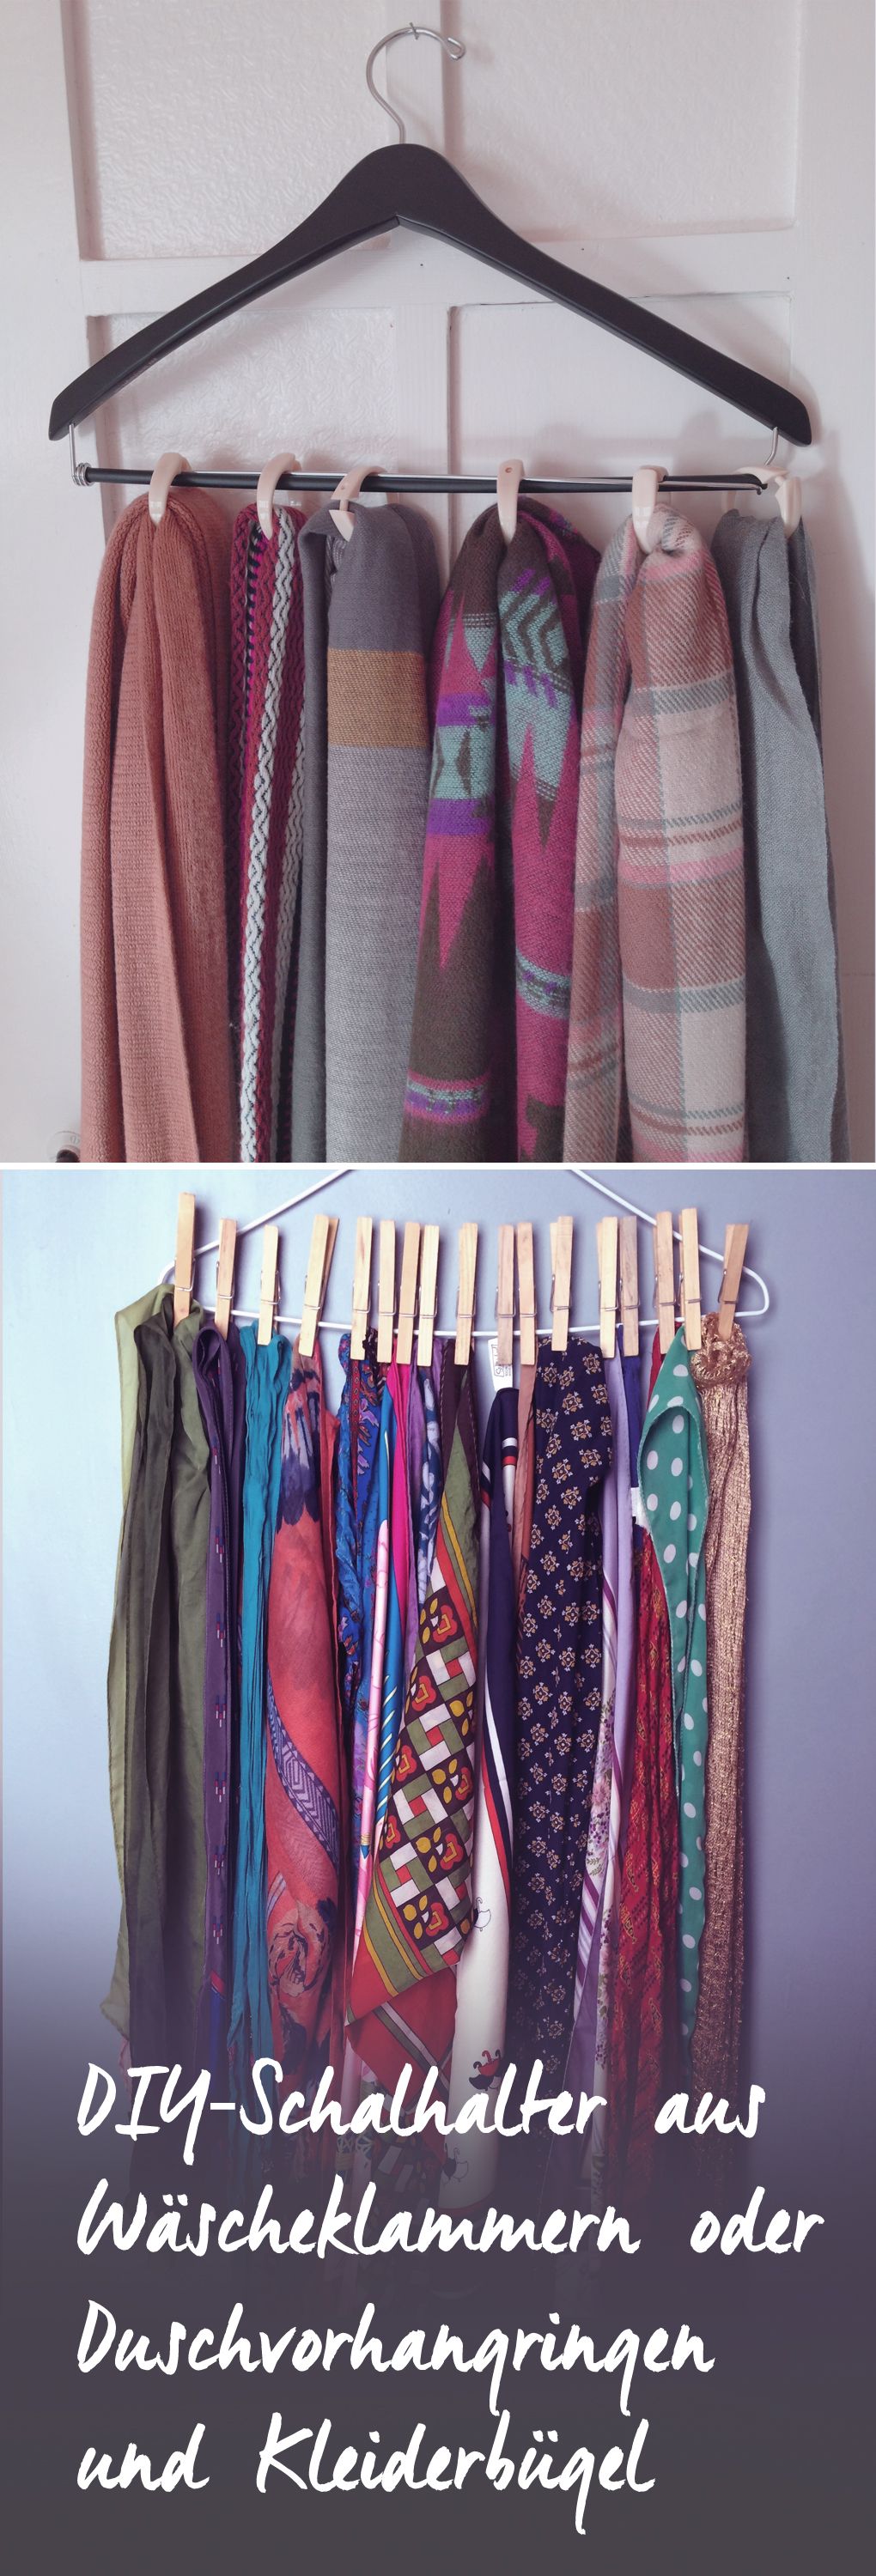 DIY-Schalhalter aus Kleiderbügeln und Wäscheklammern oder Duschvorhangringen